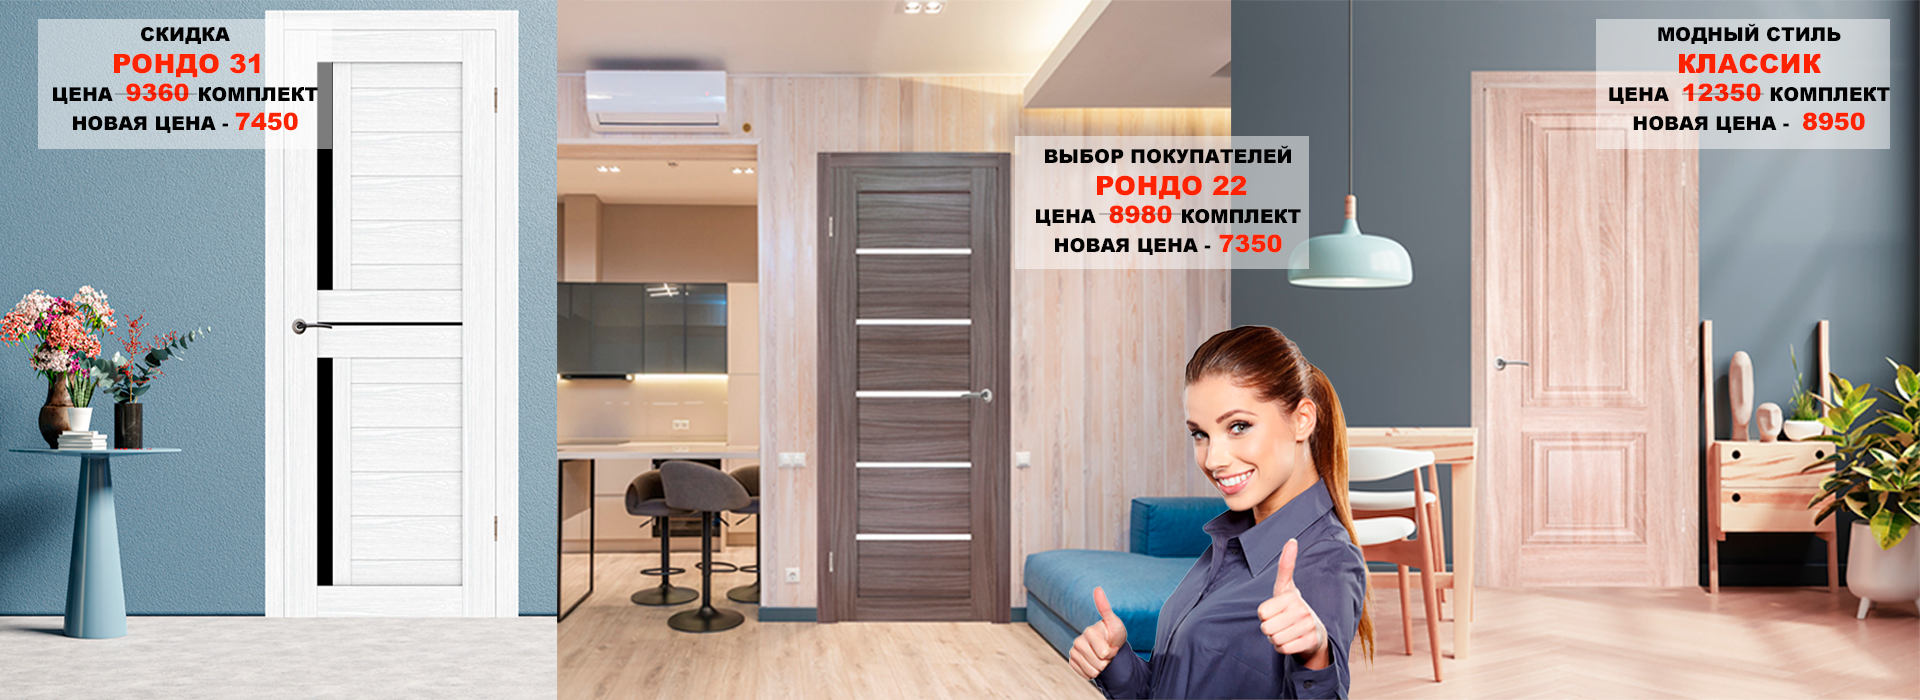 Купить надежные межкомнатные двери в Москве: каталог с ценами и фото от Комитет